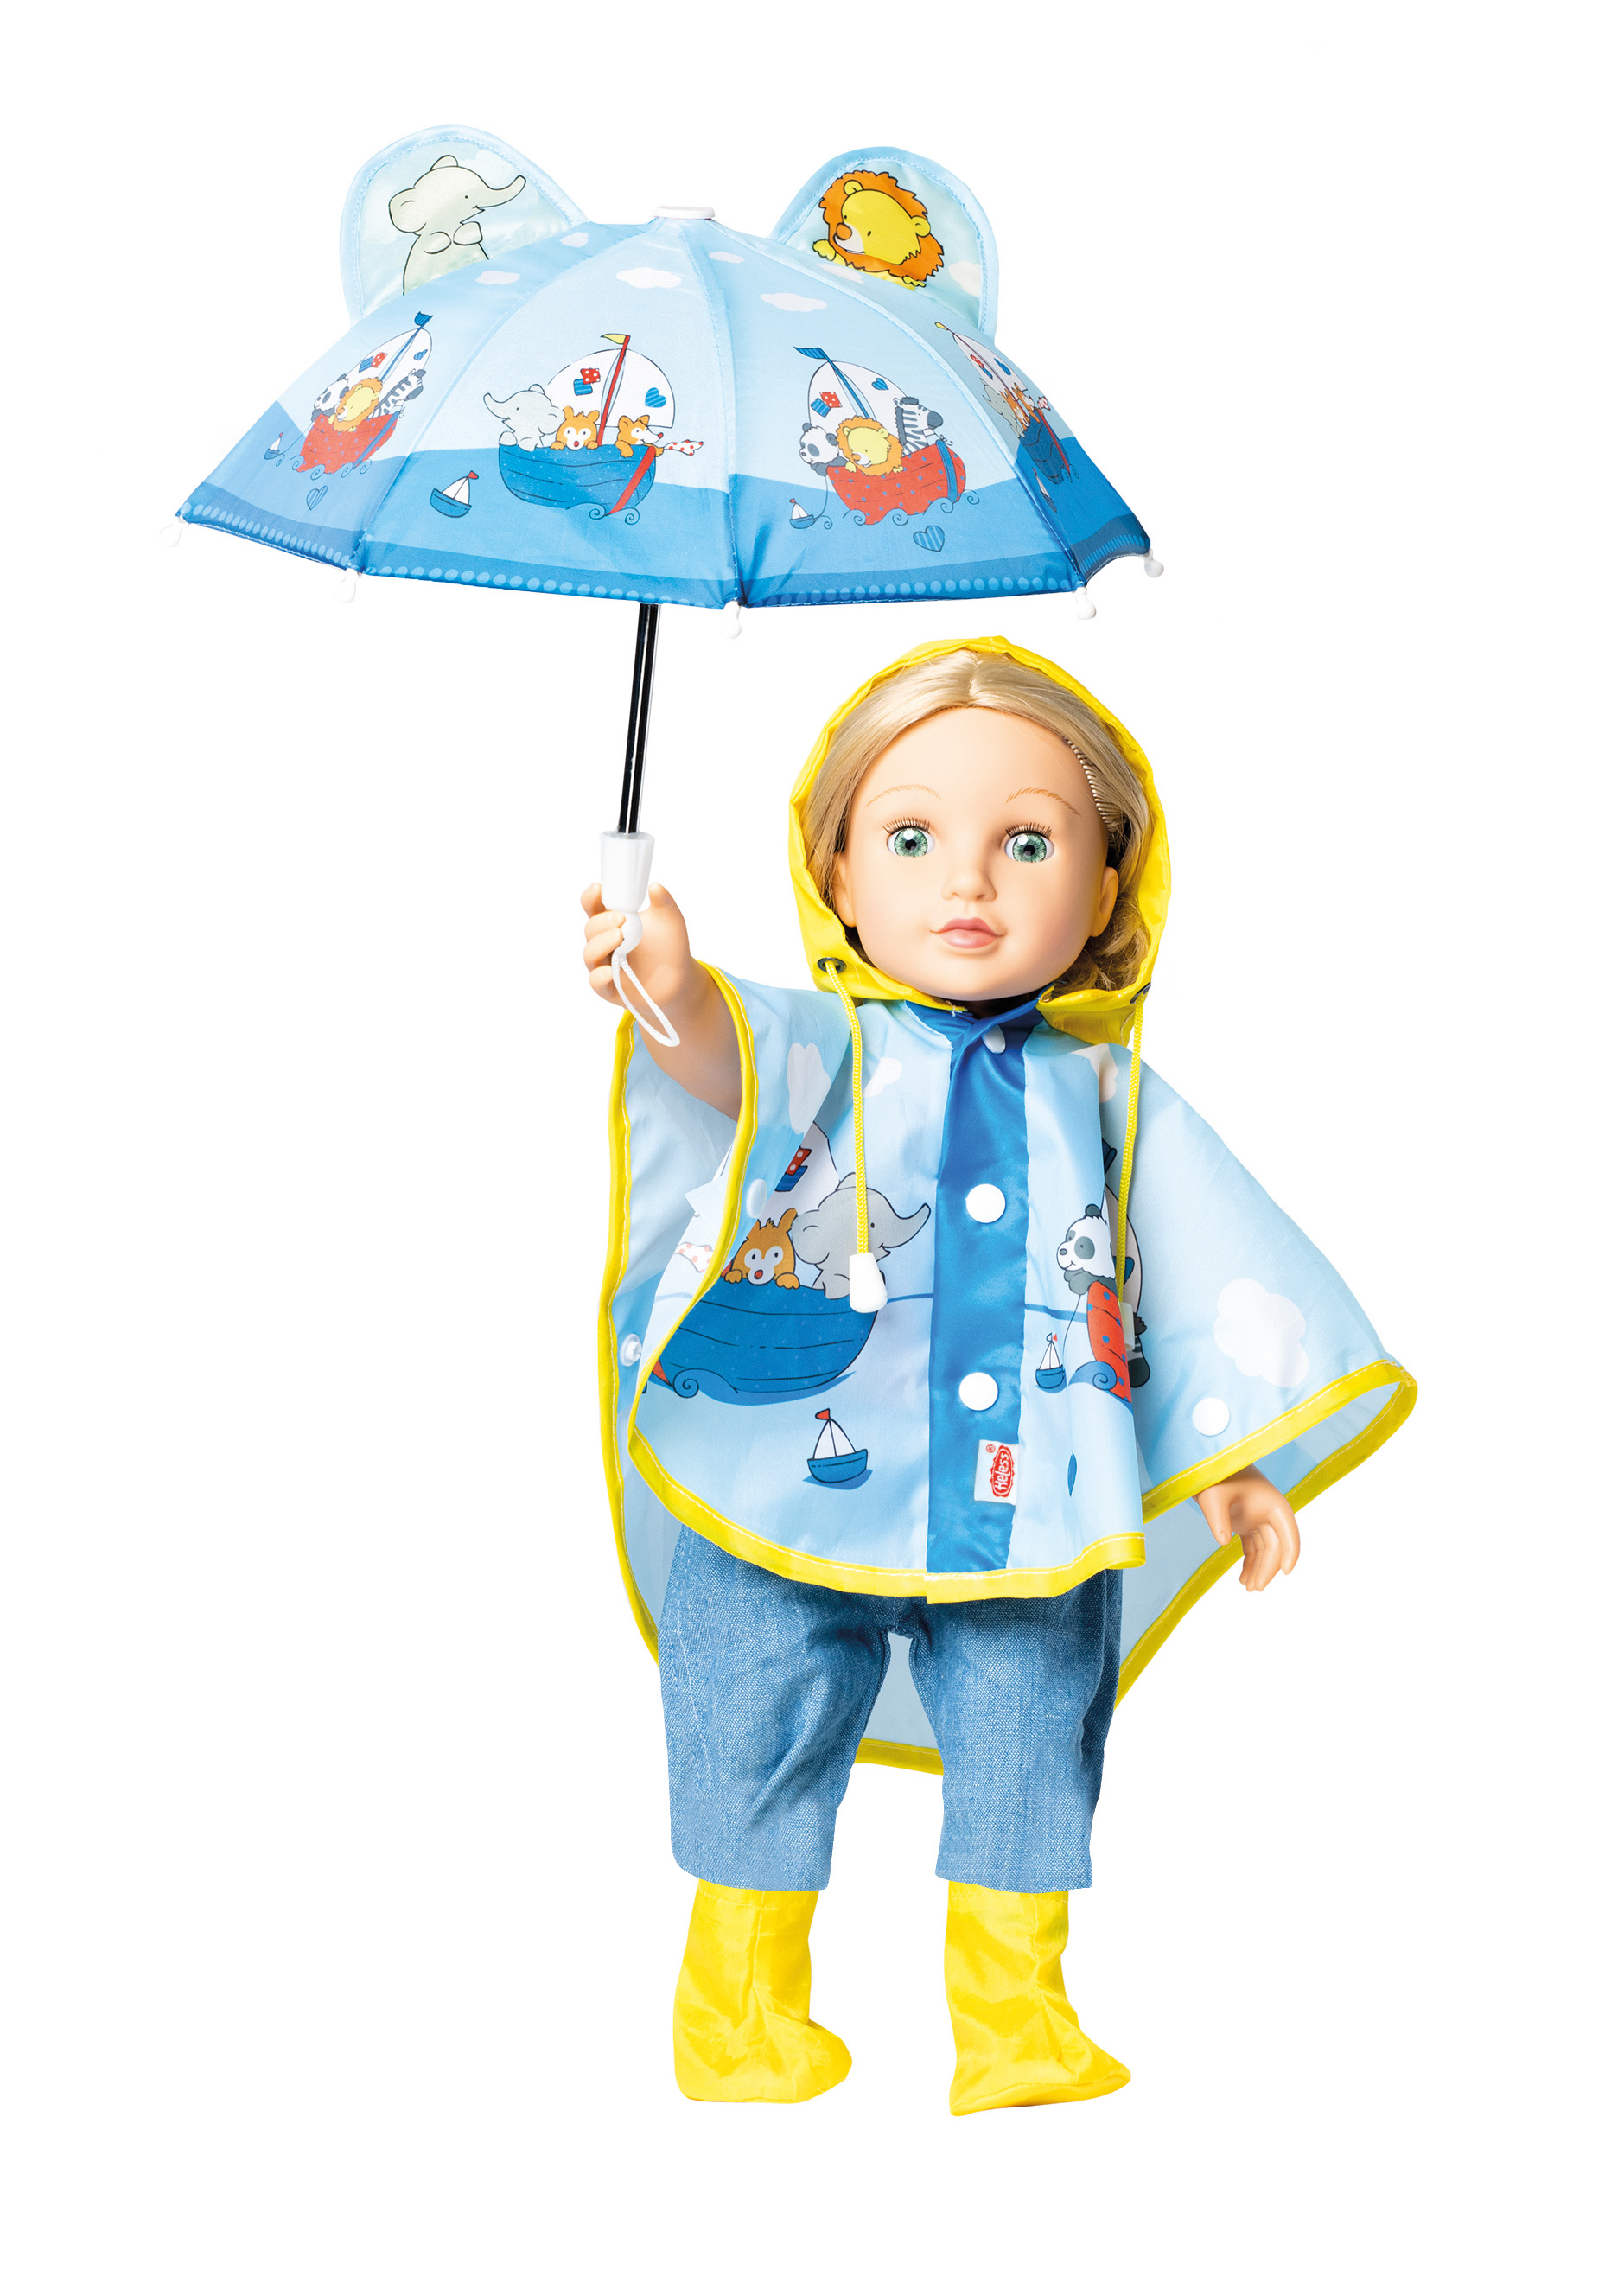 Regencape mit Puppenschirm und Regenstiefeln, Gr. 28-35 cm